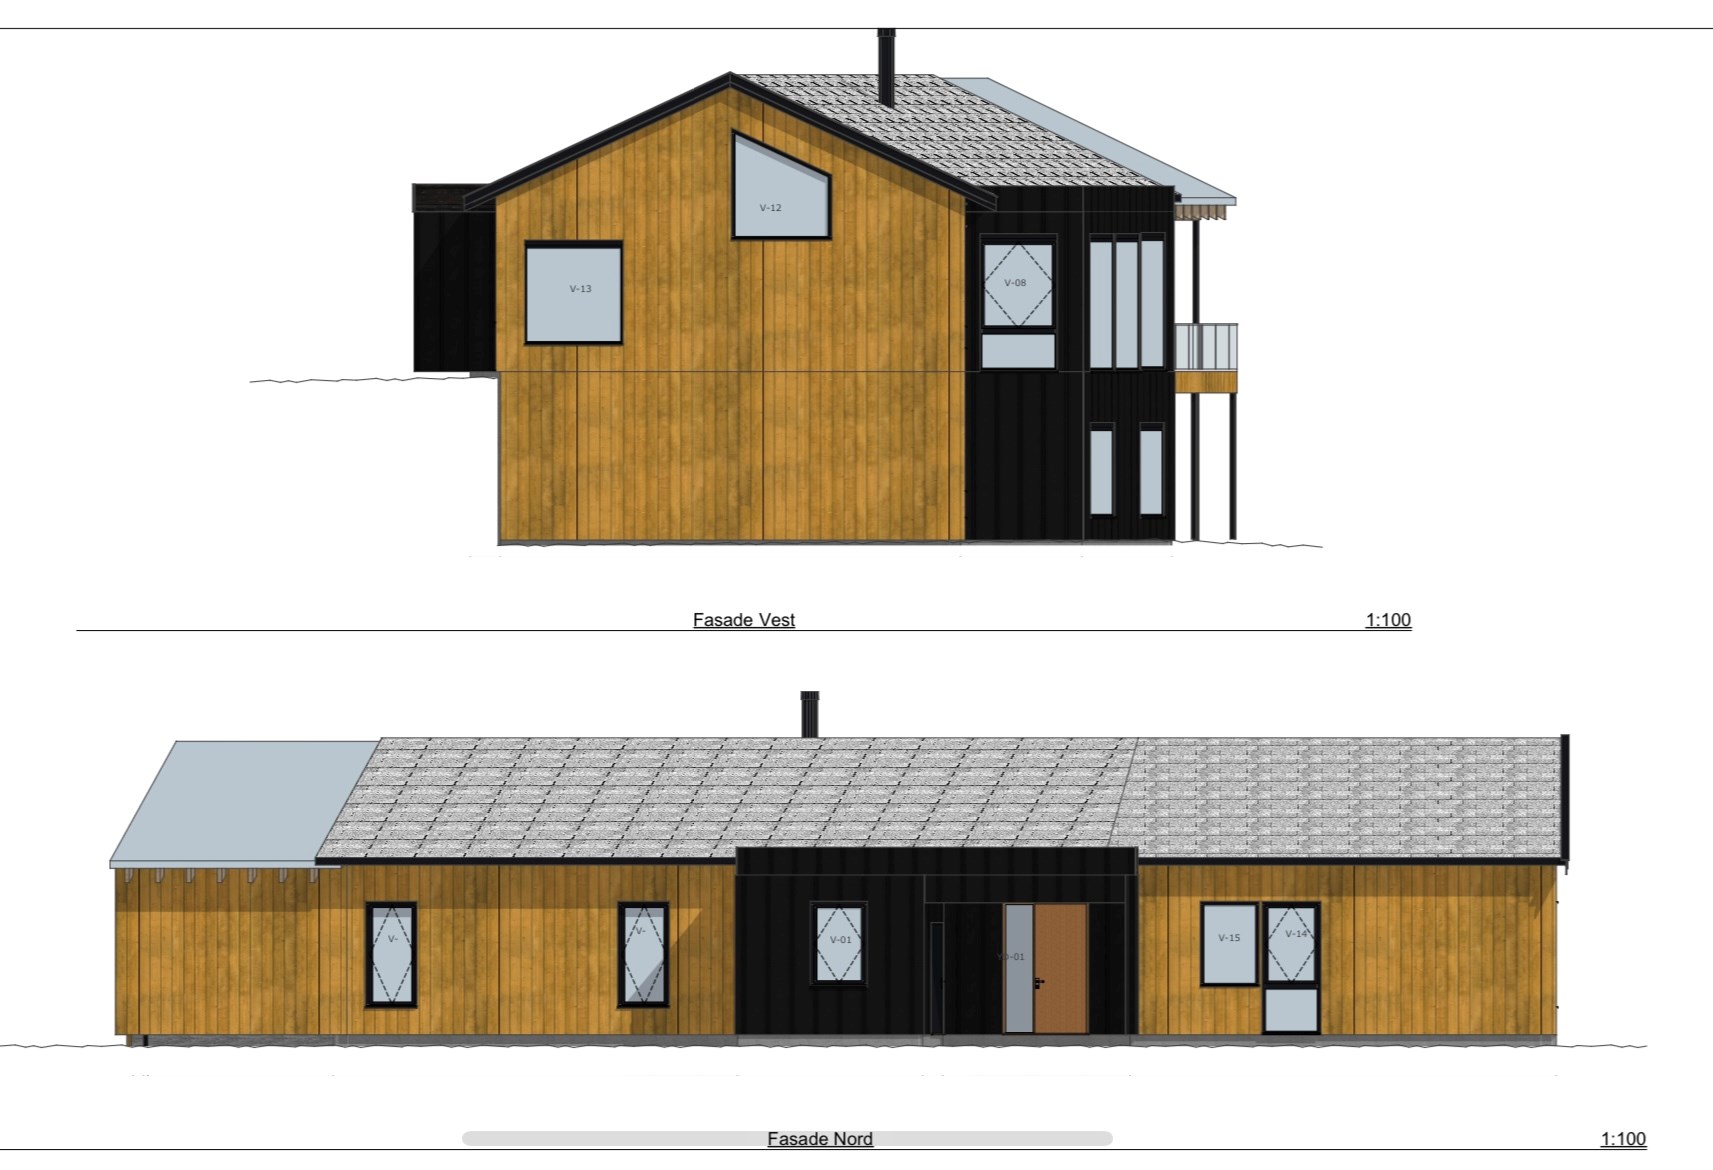 Arkitekttegnet hus ved Randsfjorden - B43AEB64-A236-4A3D-8327-C37A2121A0DB.jpeg - Jonasgustum